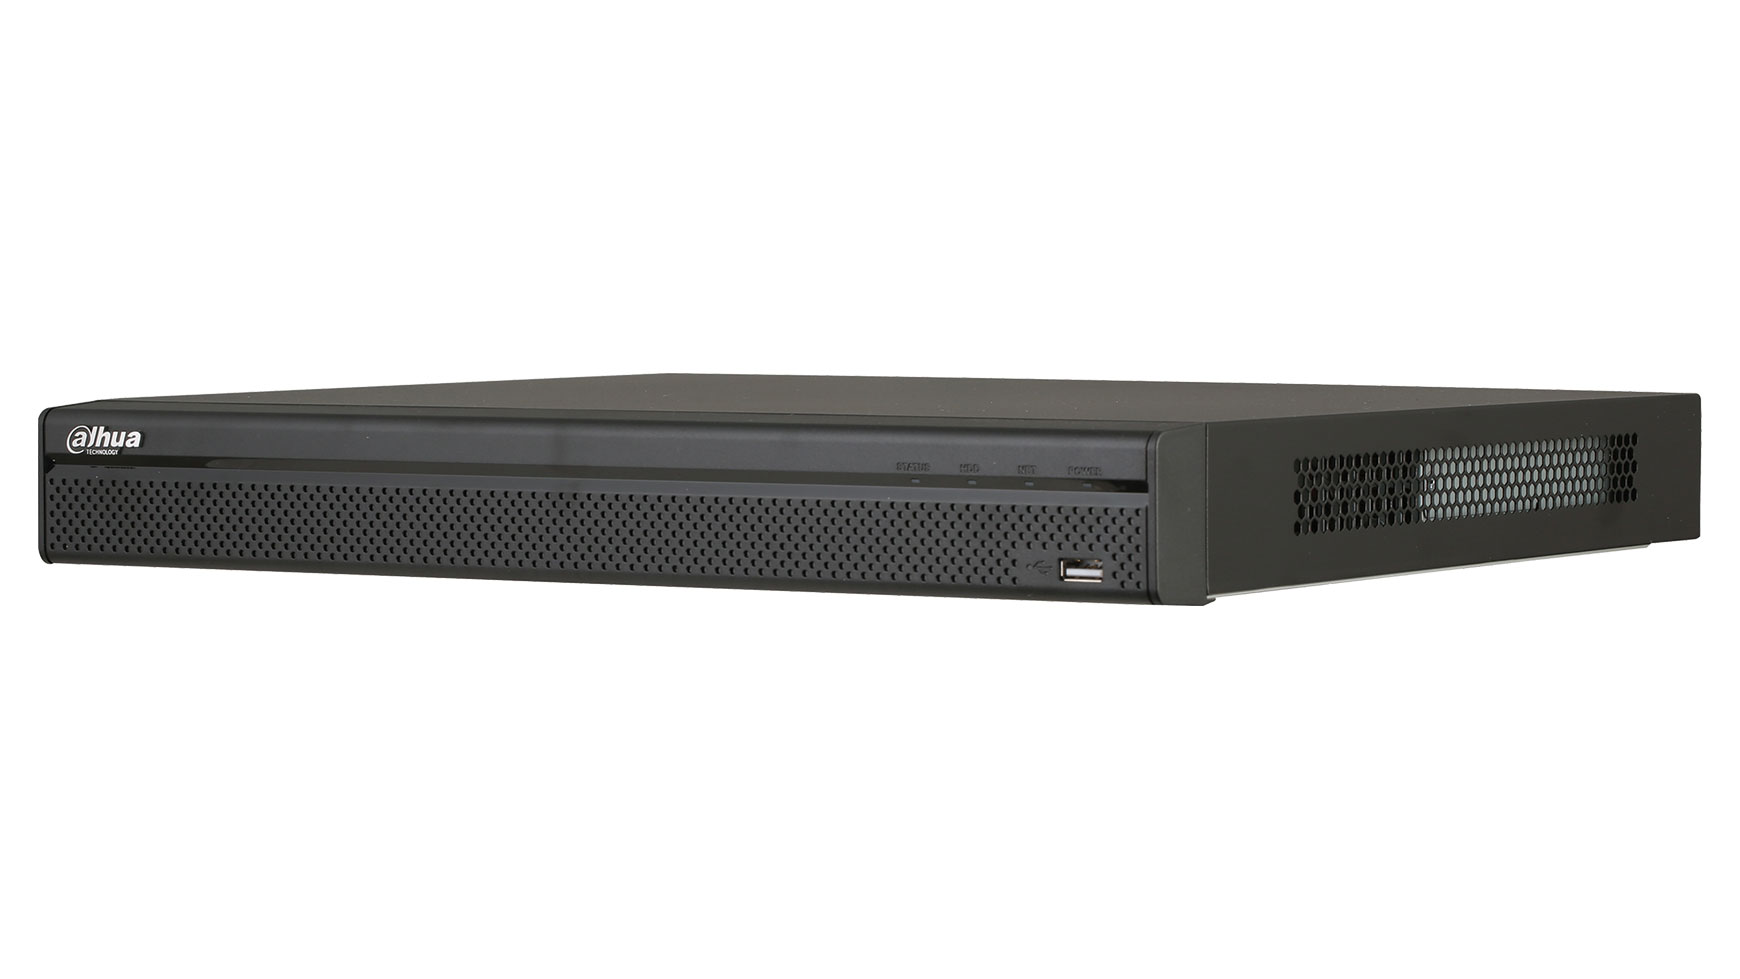 Dahua NVR5216-8P-4KS2E - Mrežni video snimač za 16 kanala i 8 PoE portova.
